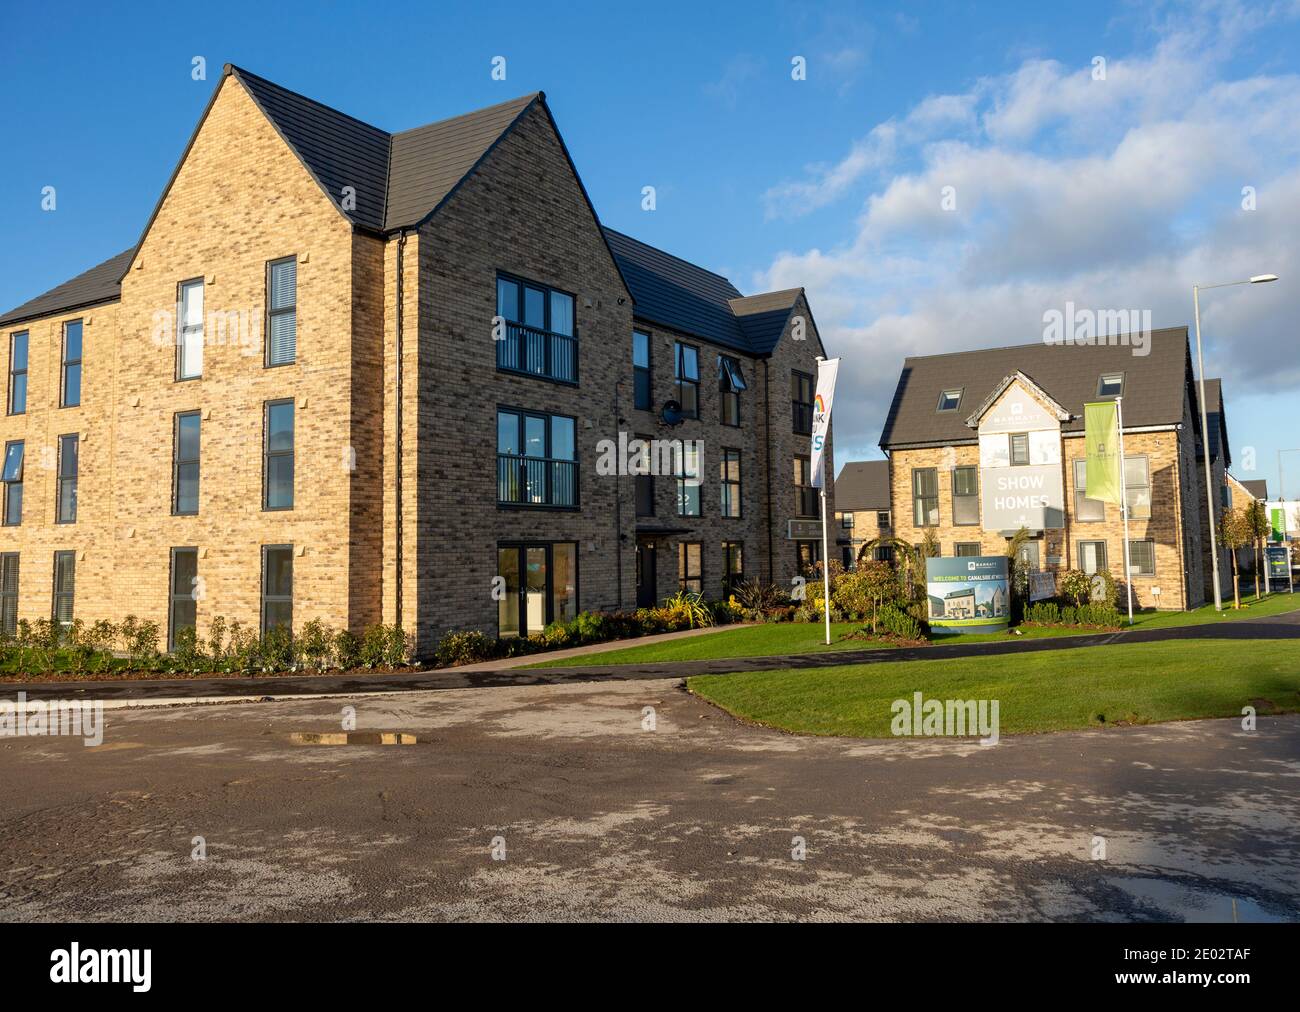 Barratt Homes sviluppo di alloggi, canalside, Wichelstowe, Swindon, Inghilterra, Regno Unito Foto Stock